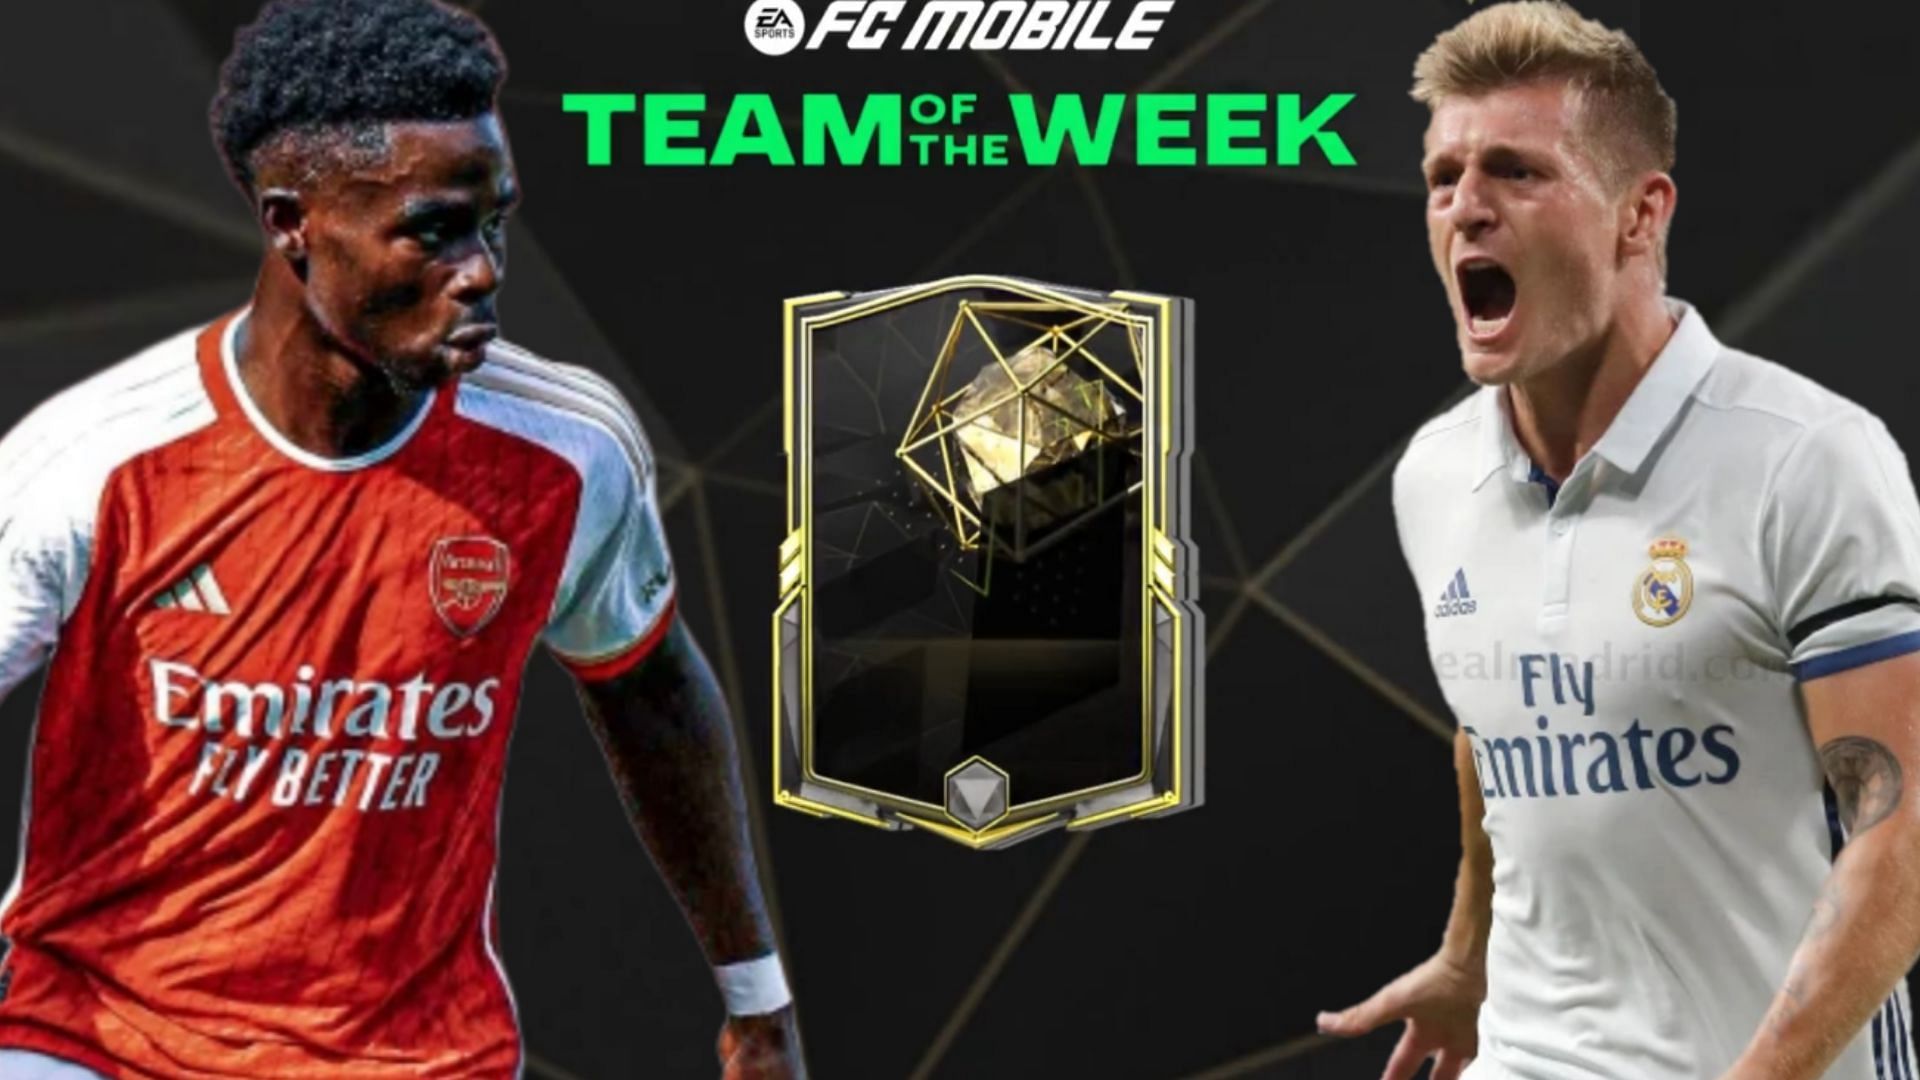 TOTW Week 3 cards will be added to FC Mobile soon (Image via Sportskeeda) 